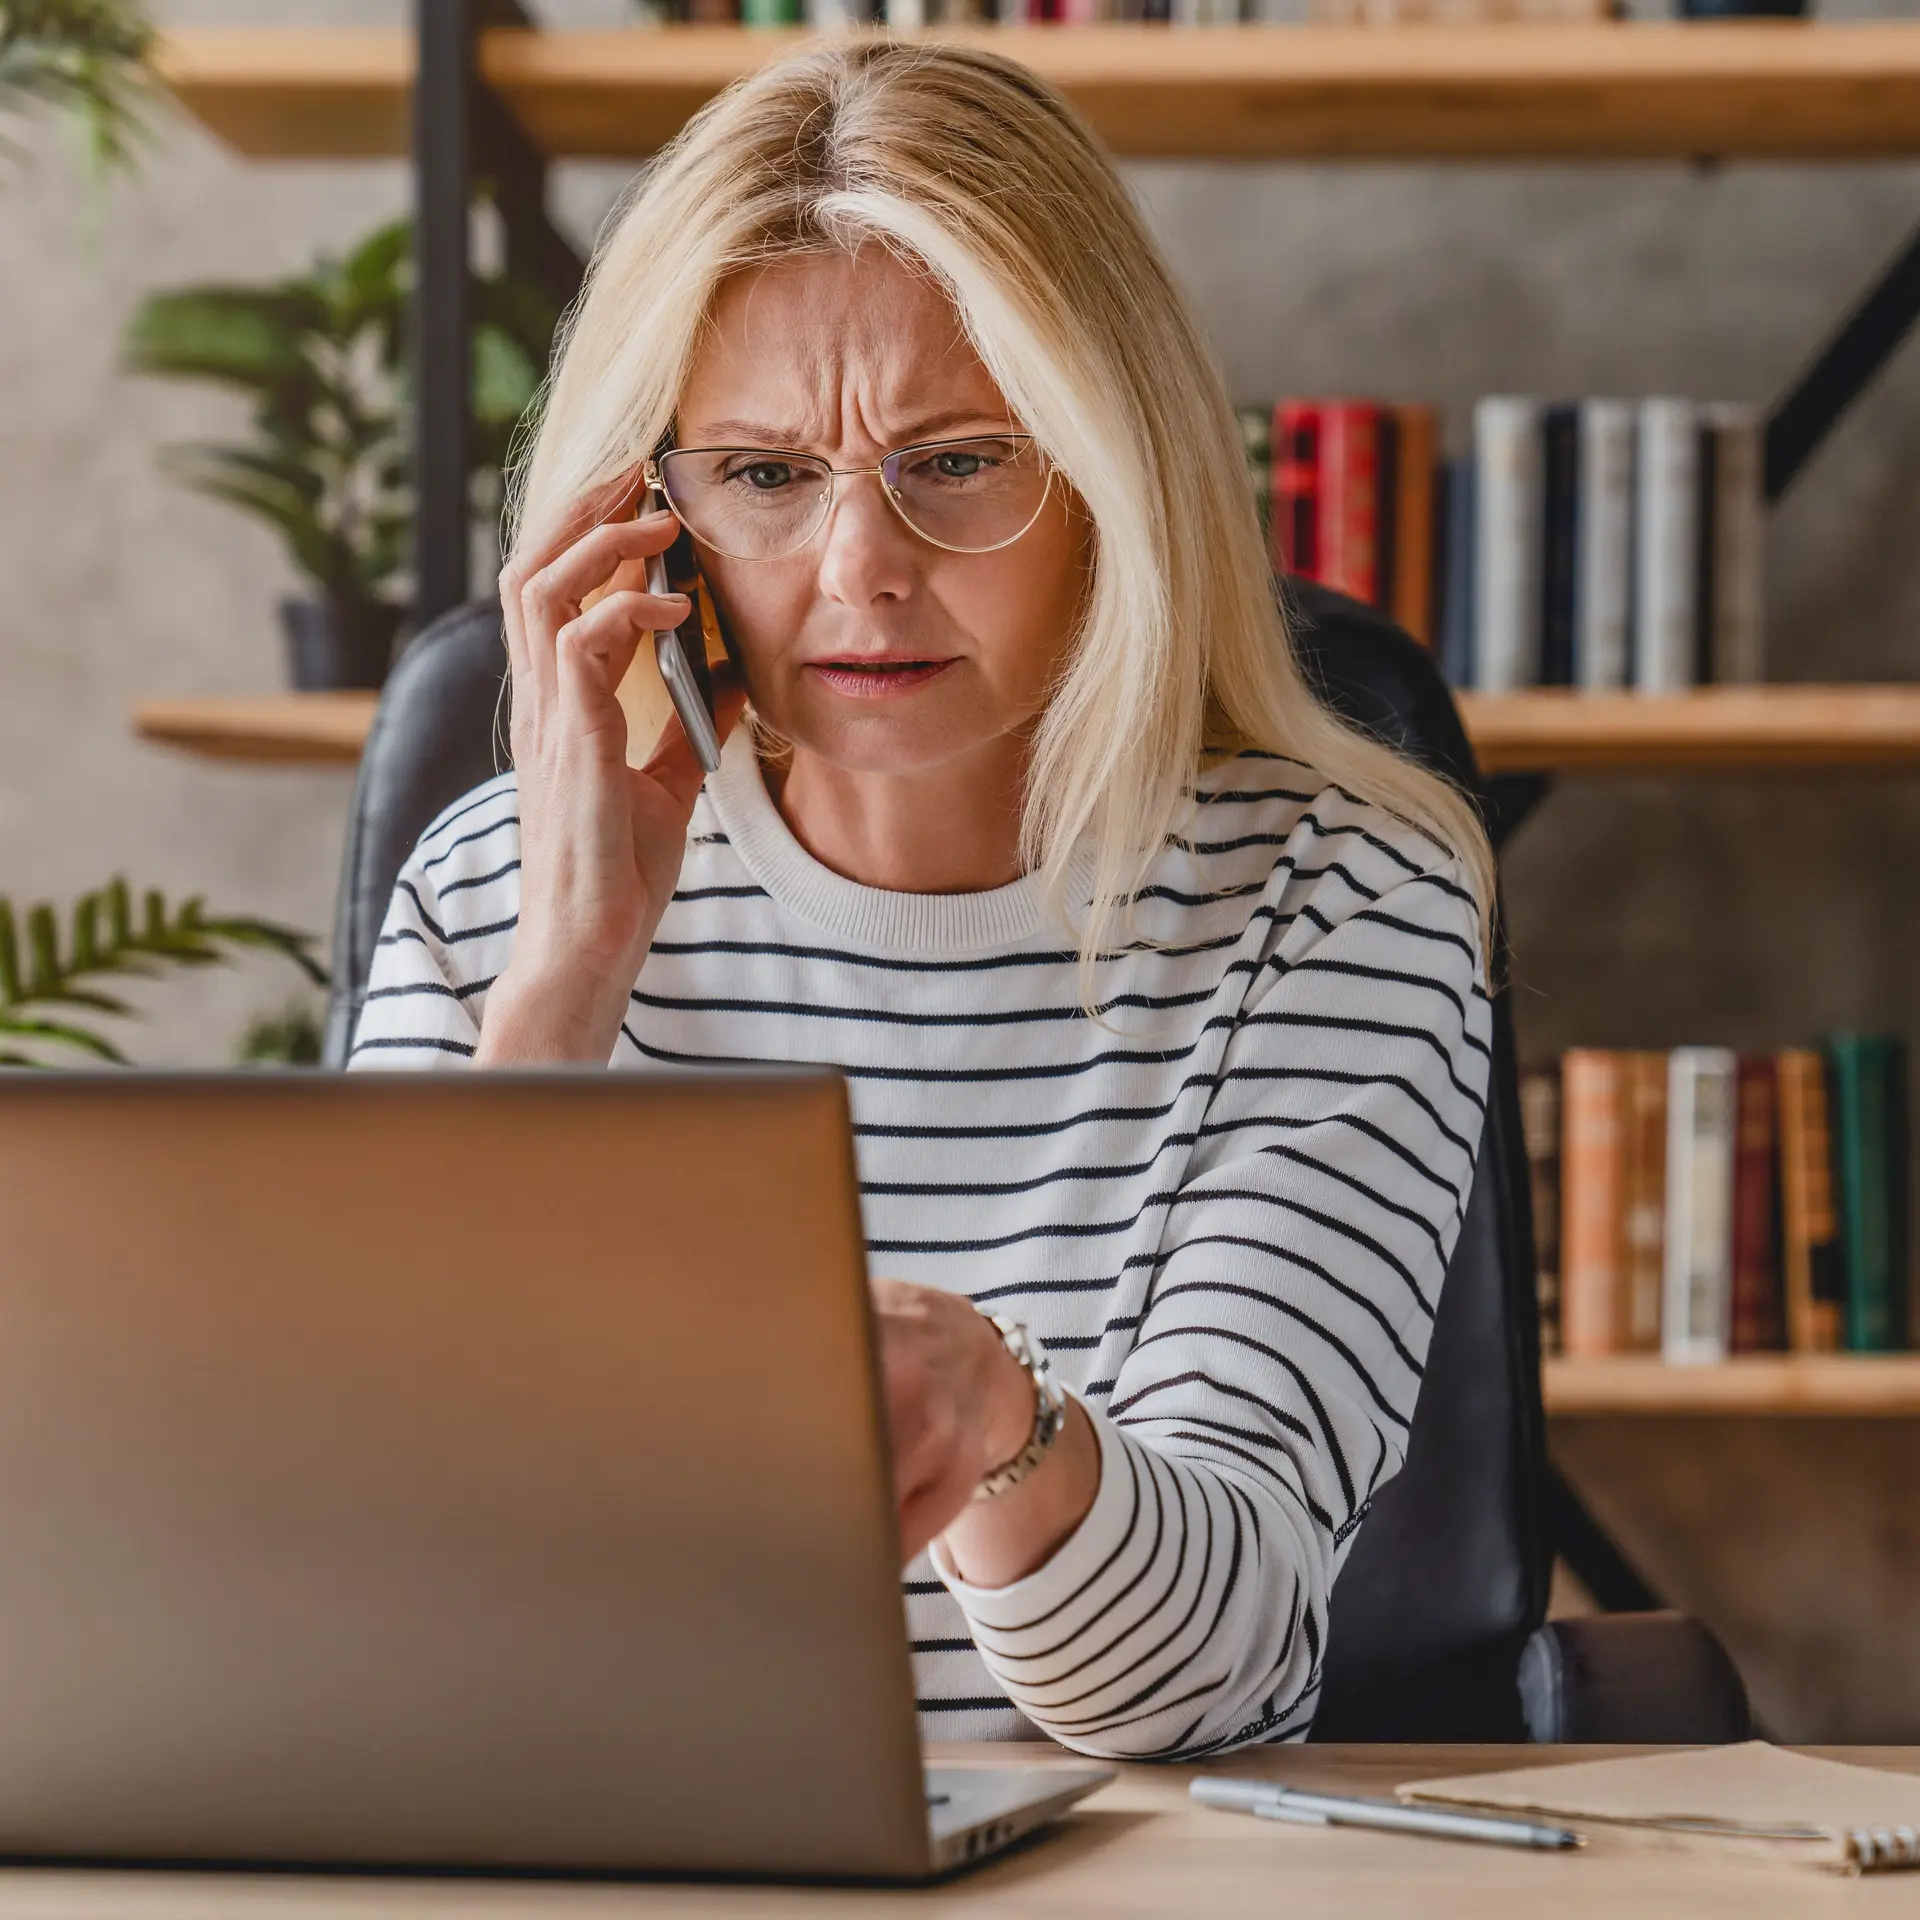 Reife Frau mit Streifenpulli sieht gestresst aus, während sie einen Laptop benutzt und mit einem Smartphone telefoniert.